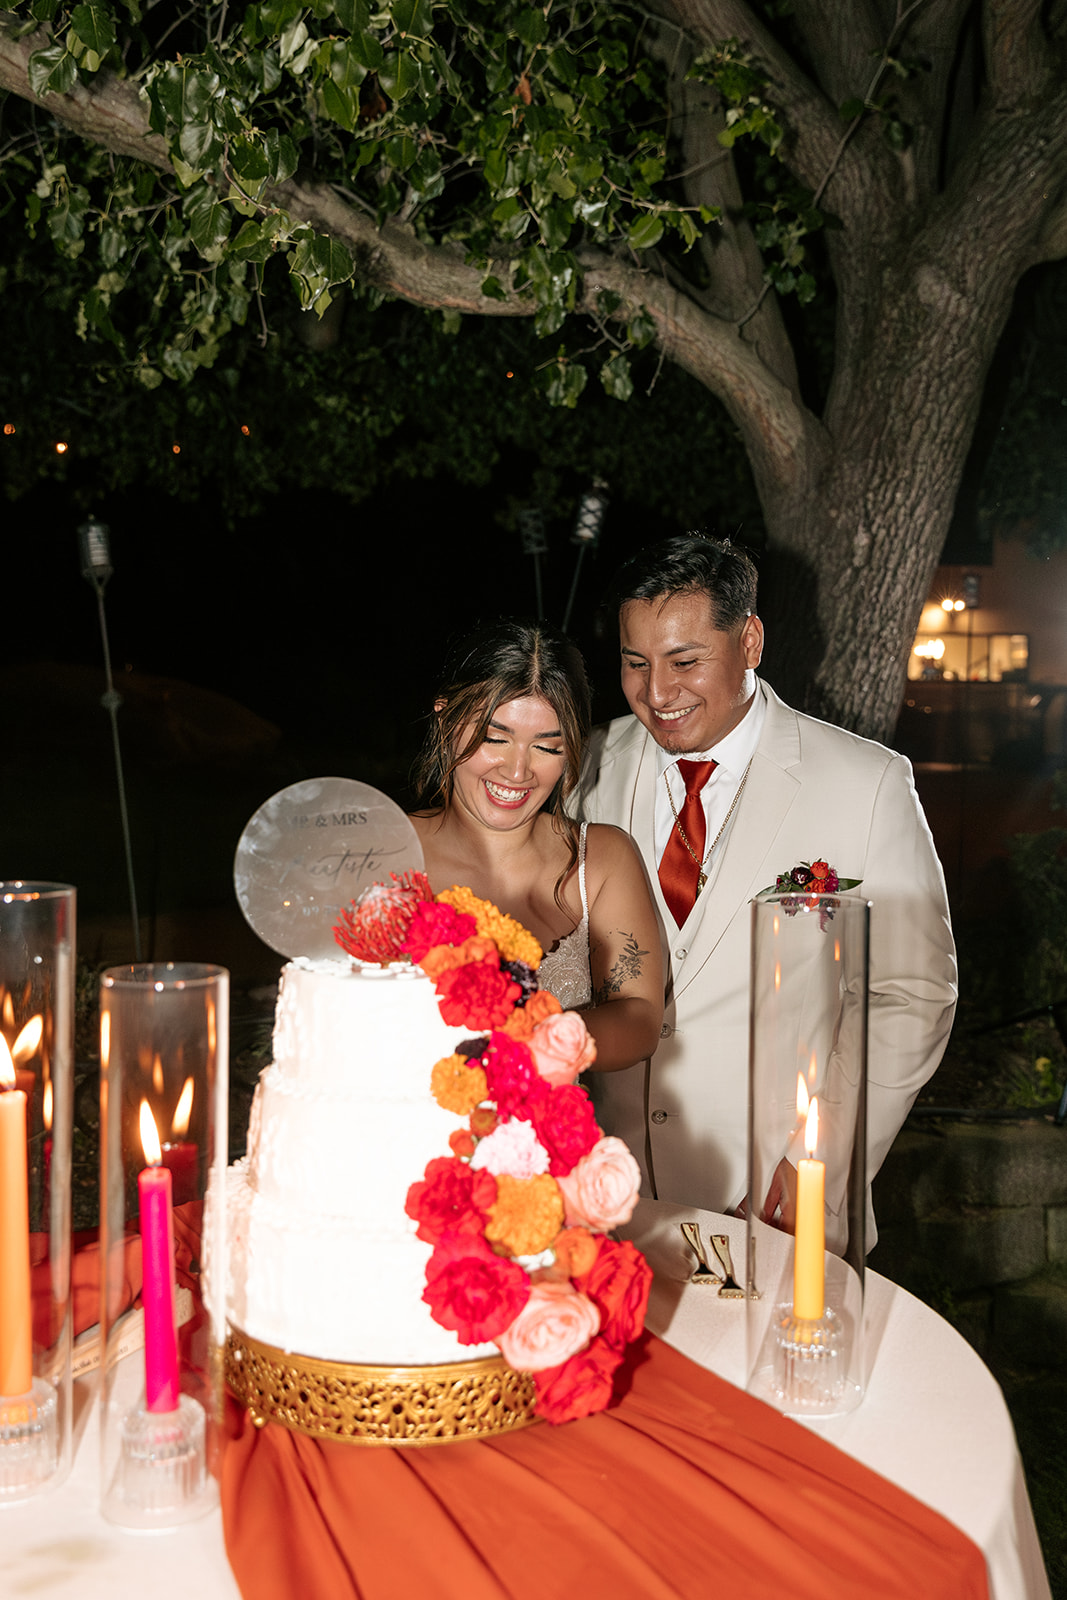 sacramento california backlyard wedding norcal wedding cake flower wedding cake cake cutting pictures bride and groom